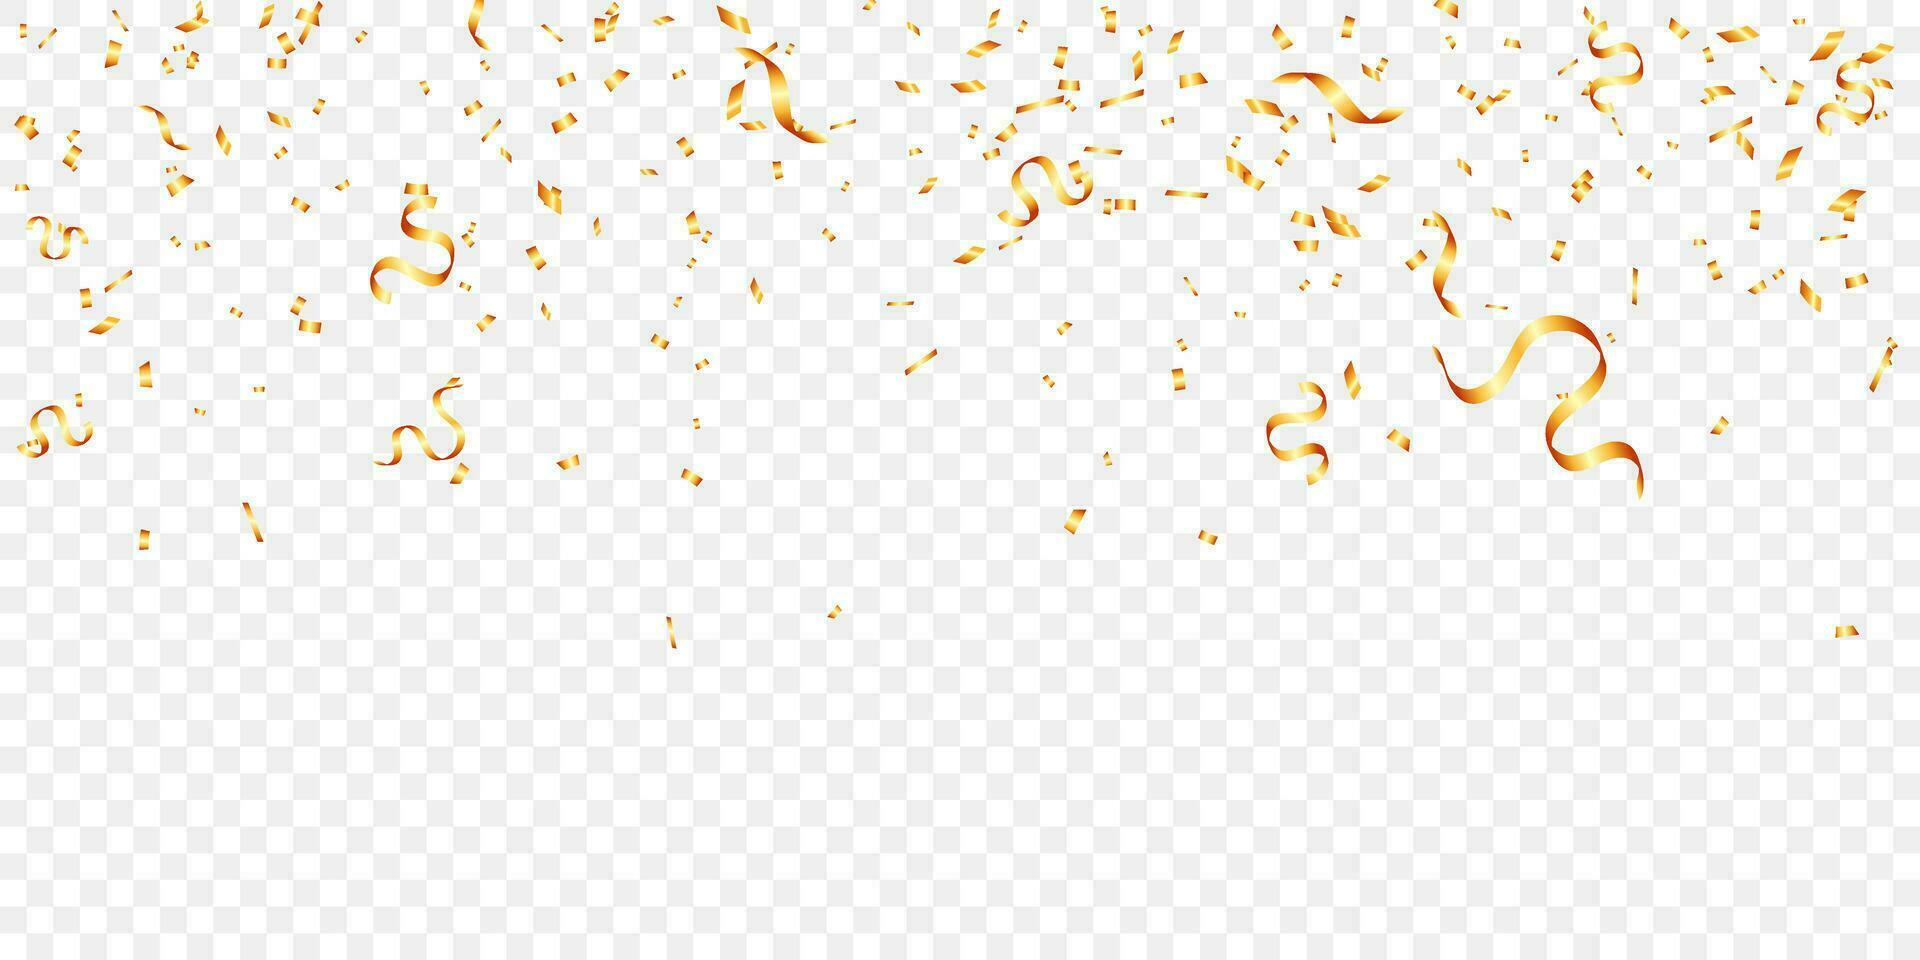 gouden confetti en klatergoud viering, vakantie, verjaardag, partij en verjaardag vector